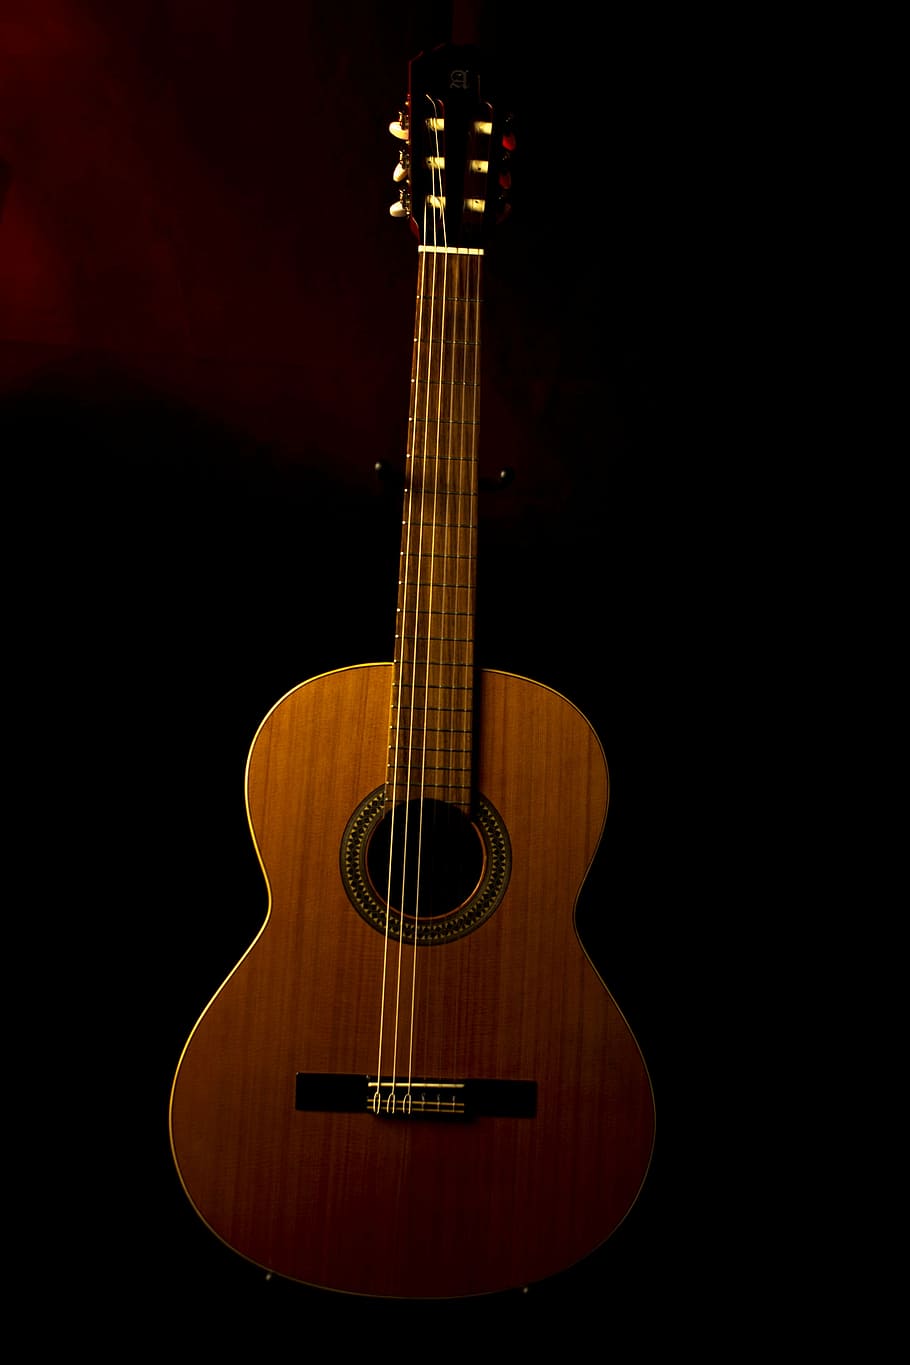 marrón, acústica, guitarra, negro, superficie, música, guitarra española, instrumento, tocar la guitarra, instrumento de cuerda